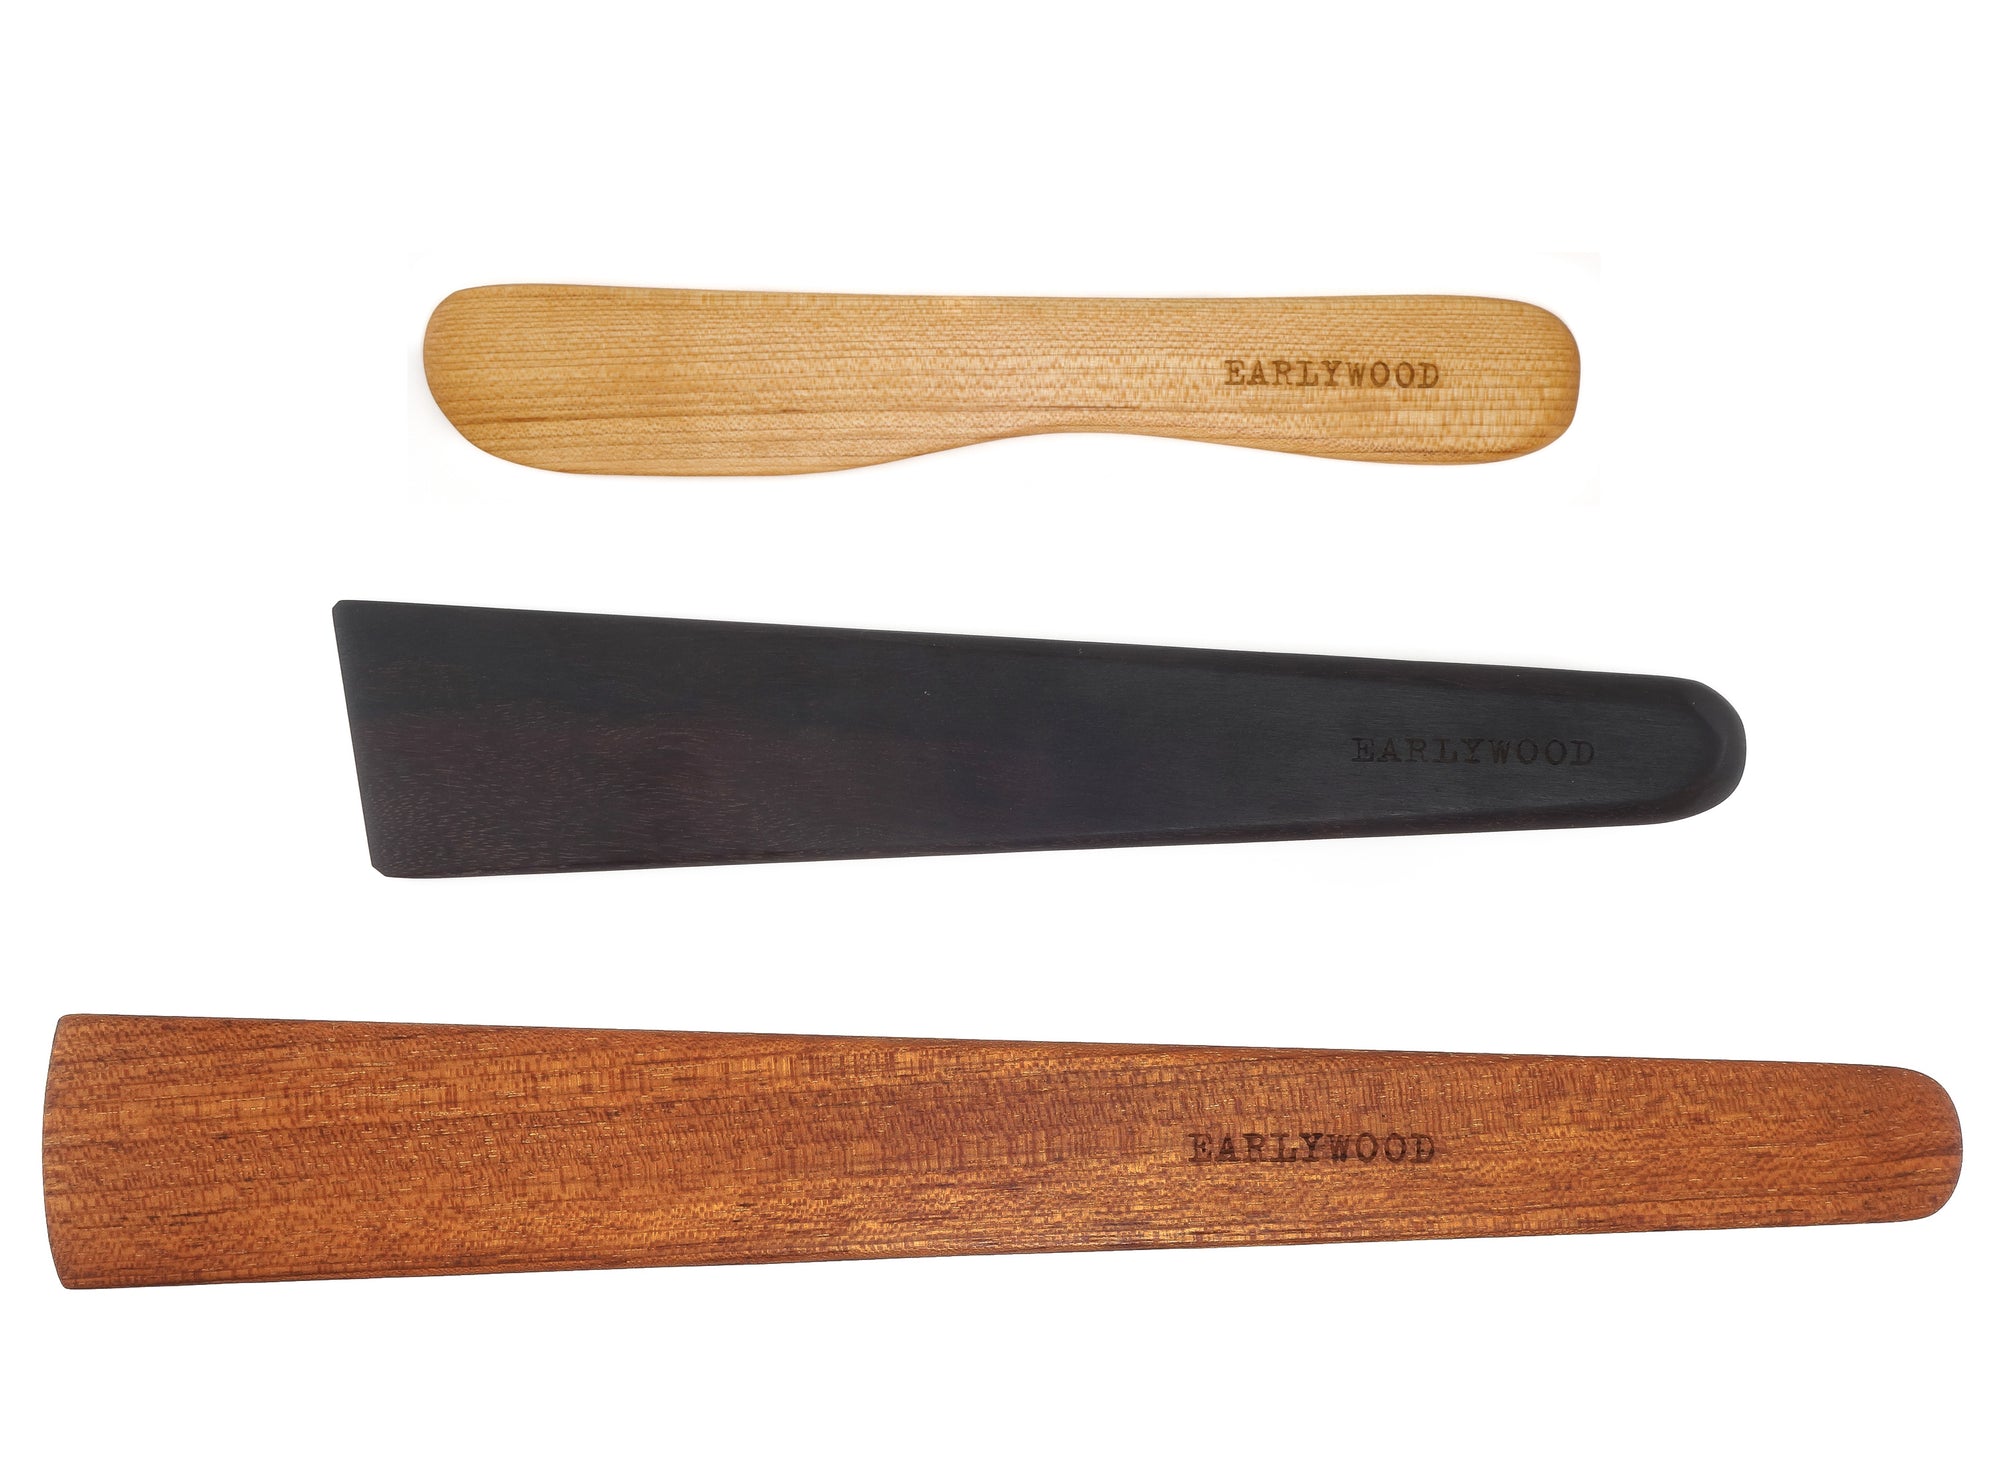 set of three wooden kitchen utensils, wooden spatula, cast iron scraper, and wooden spreader